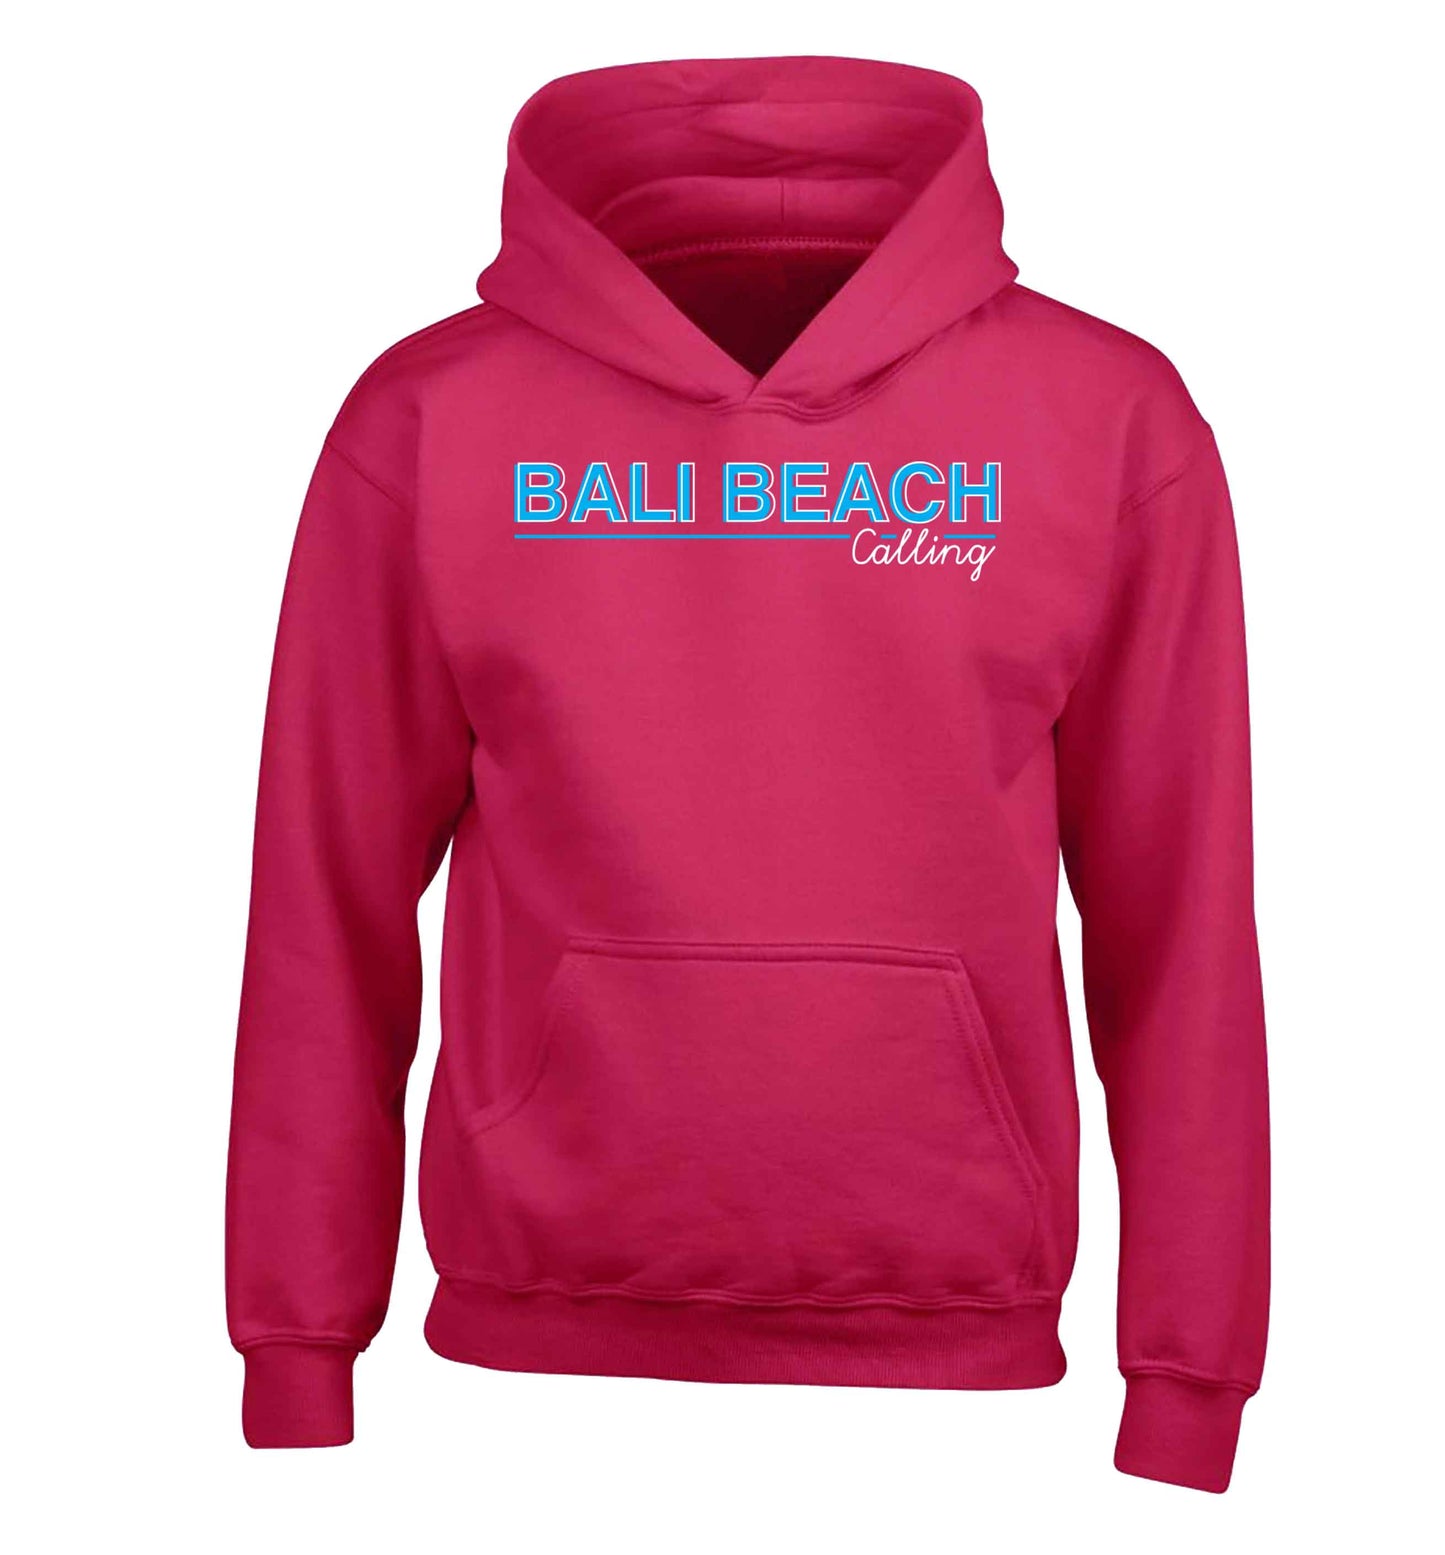 Bali beach calling children's pink hoodie 12-13 Years